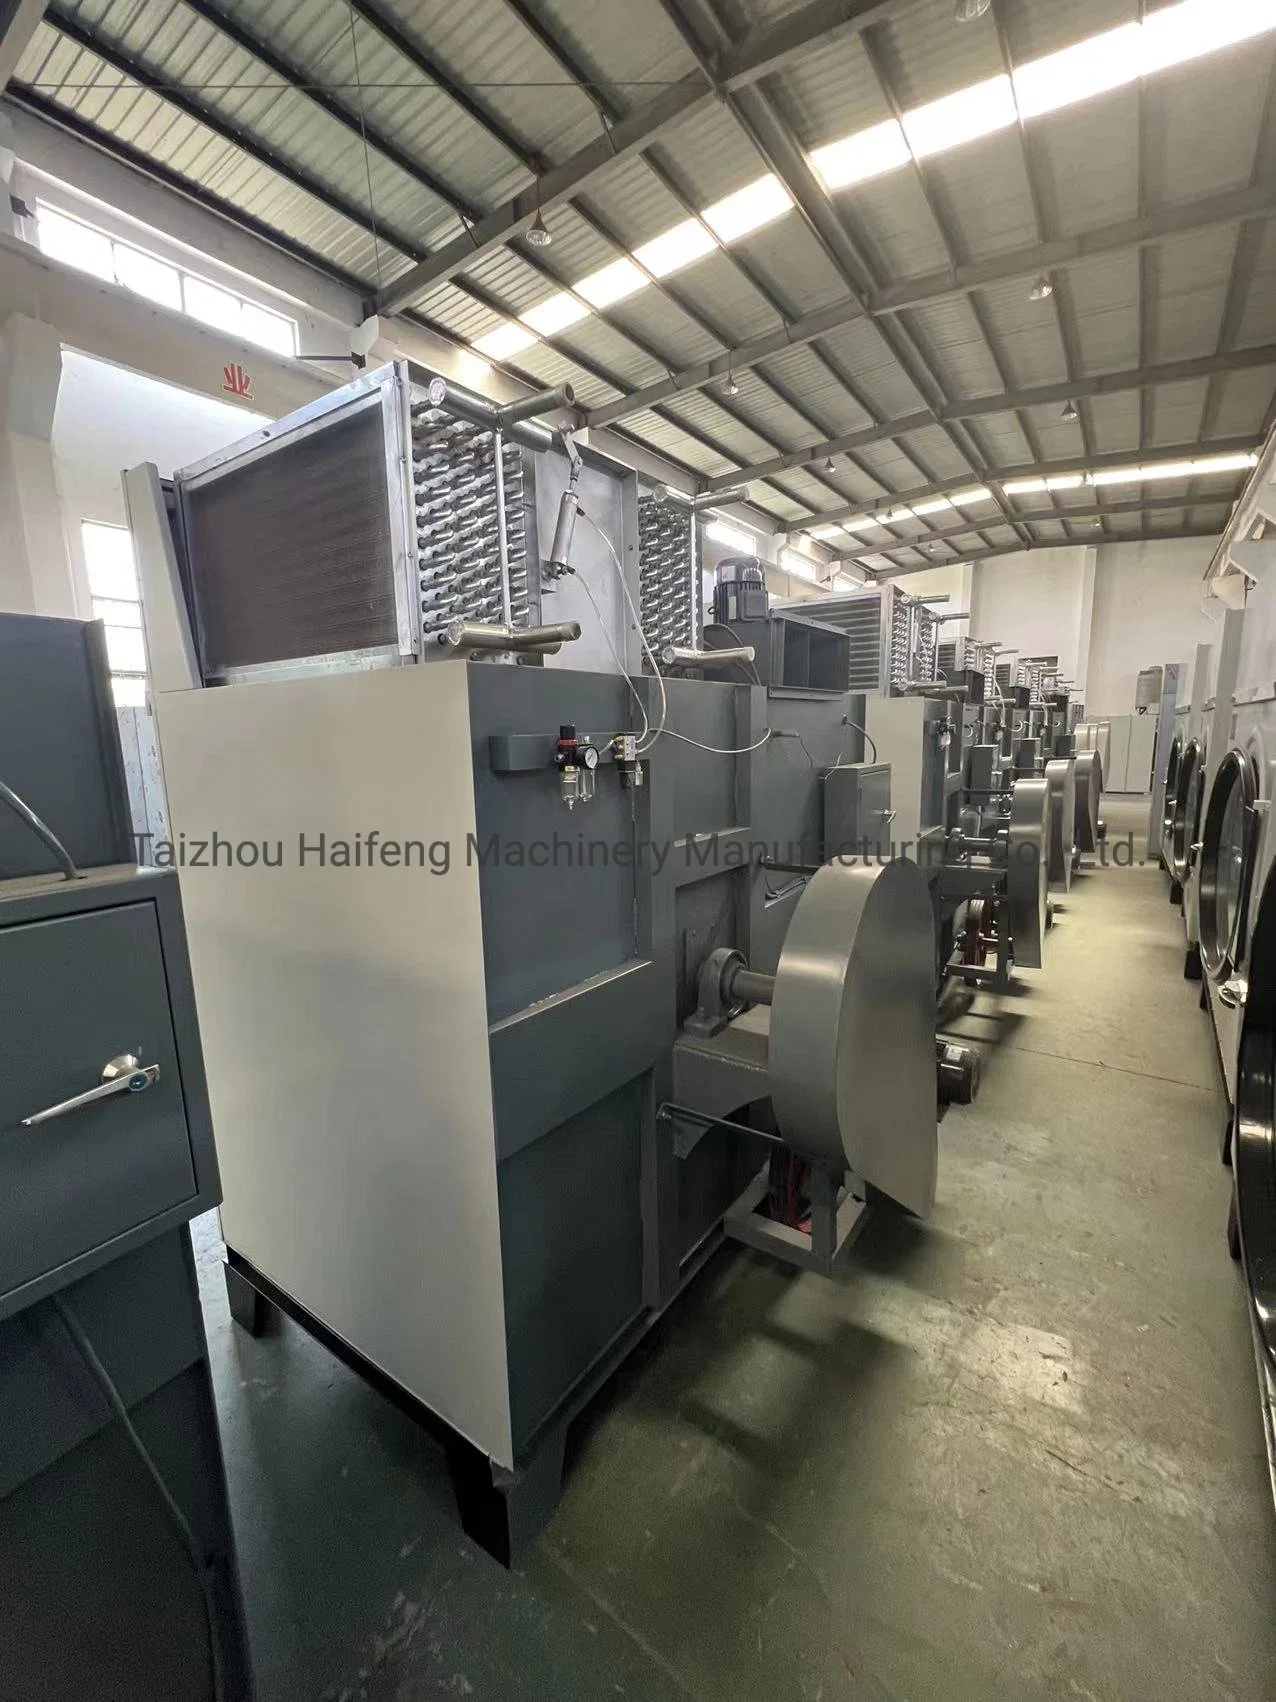 Comercial e Industrial de calefacción de gas Secadora / máquina de secado (HGQ)